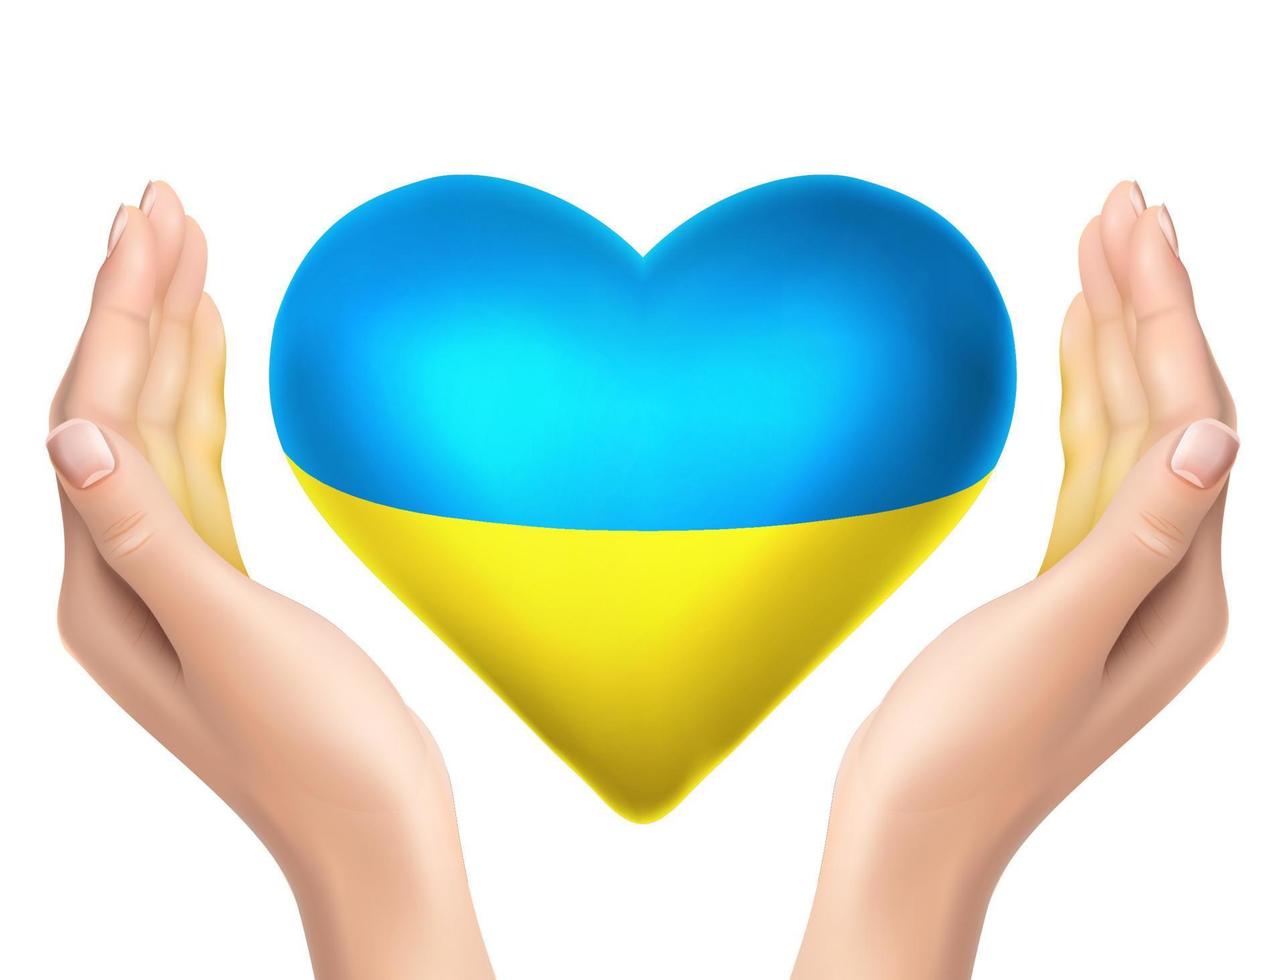 Icona vettore realistico 3d. bandiera della pace ucraina a forma di cuore con mani realistiche che la tengono.